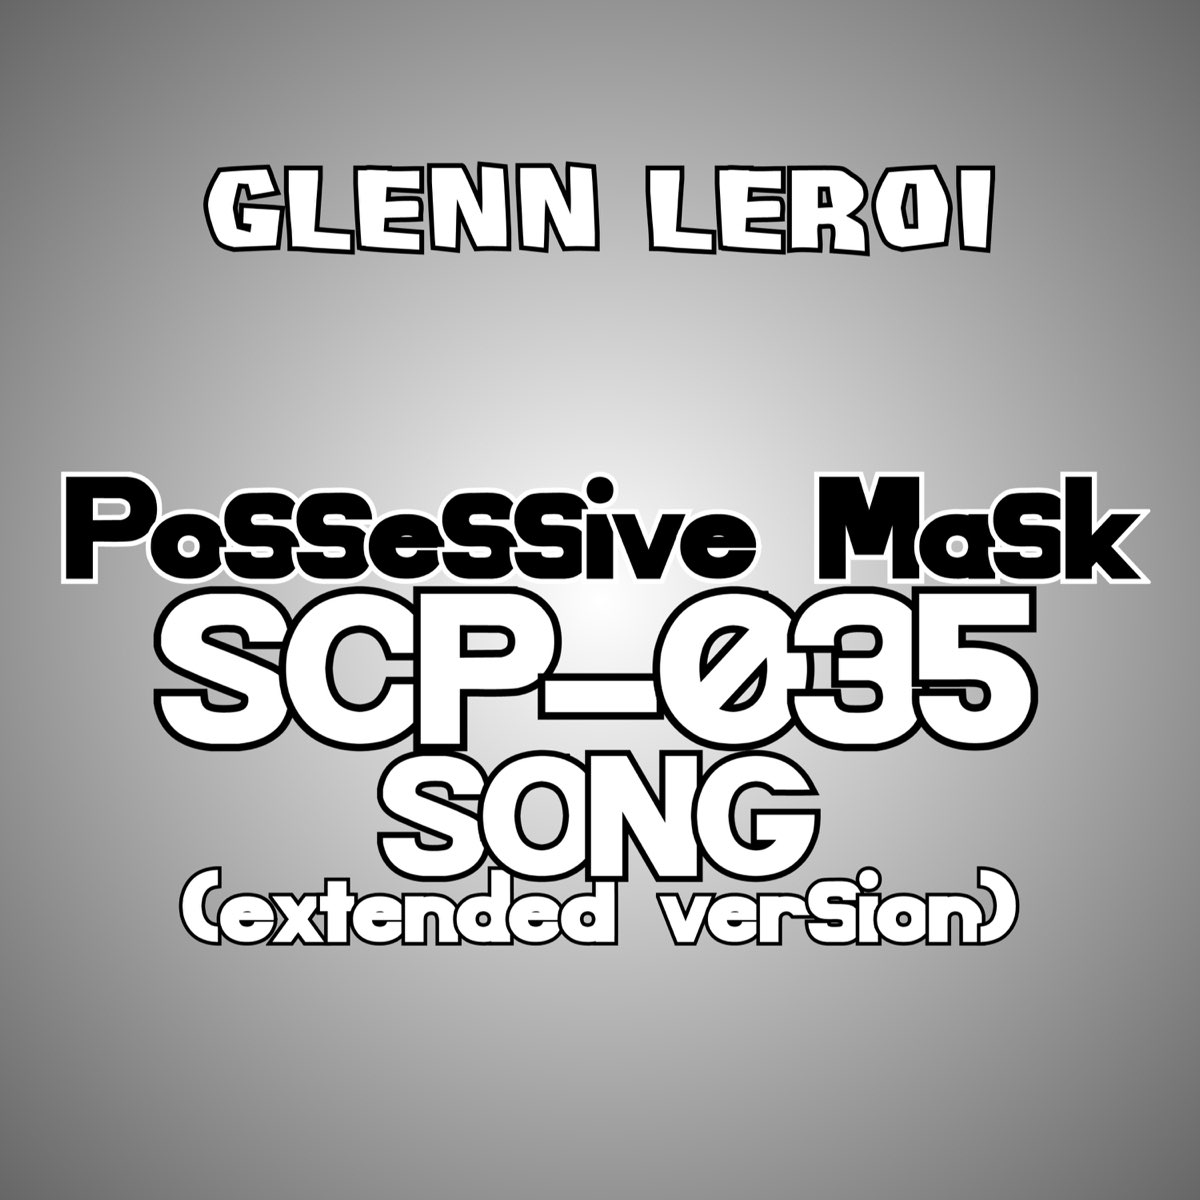 SCP: SCP-035 The Possessive Mask